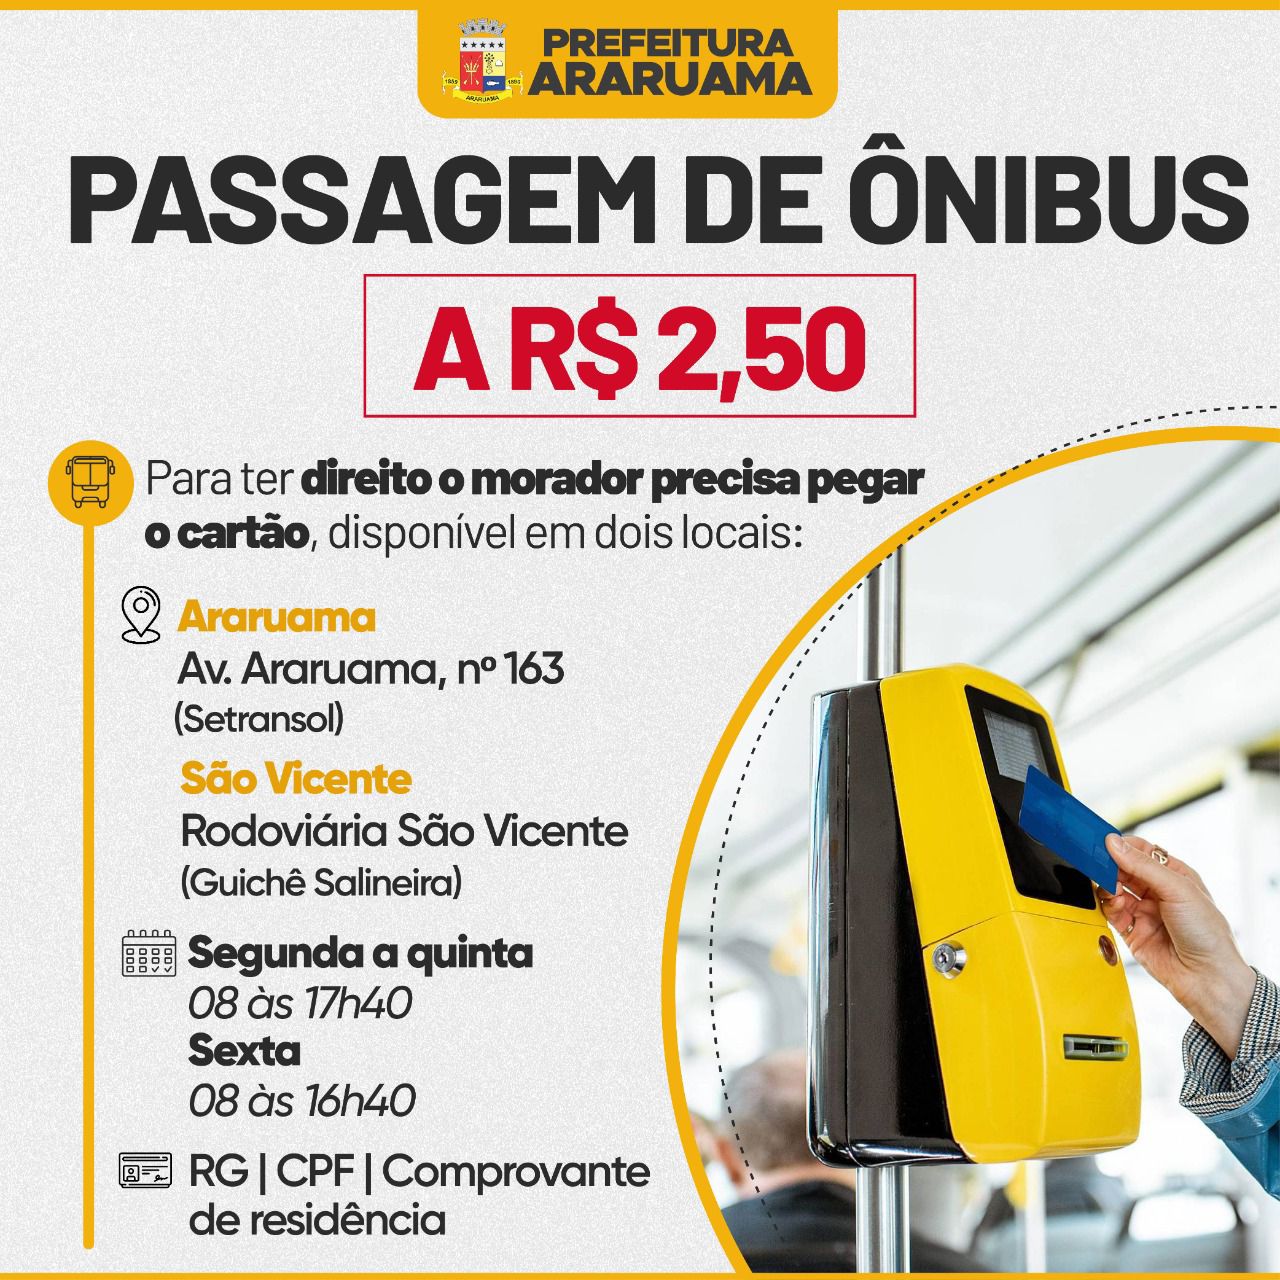 Prefeitura de Araruama implanta subsídio e passagem de ônibus passa a valer R$2,50